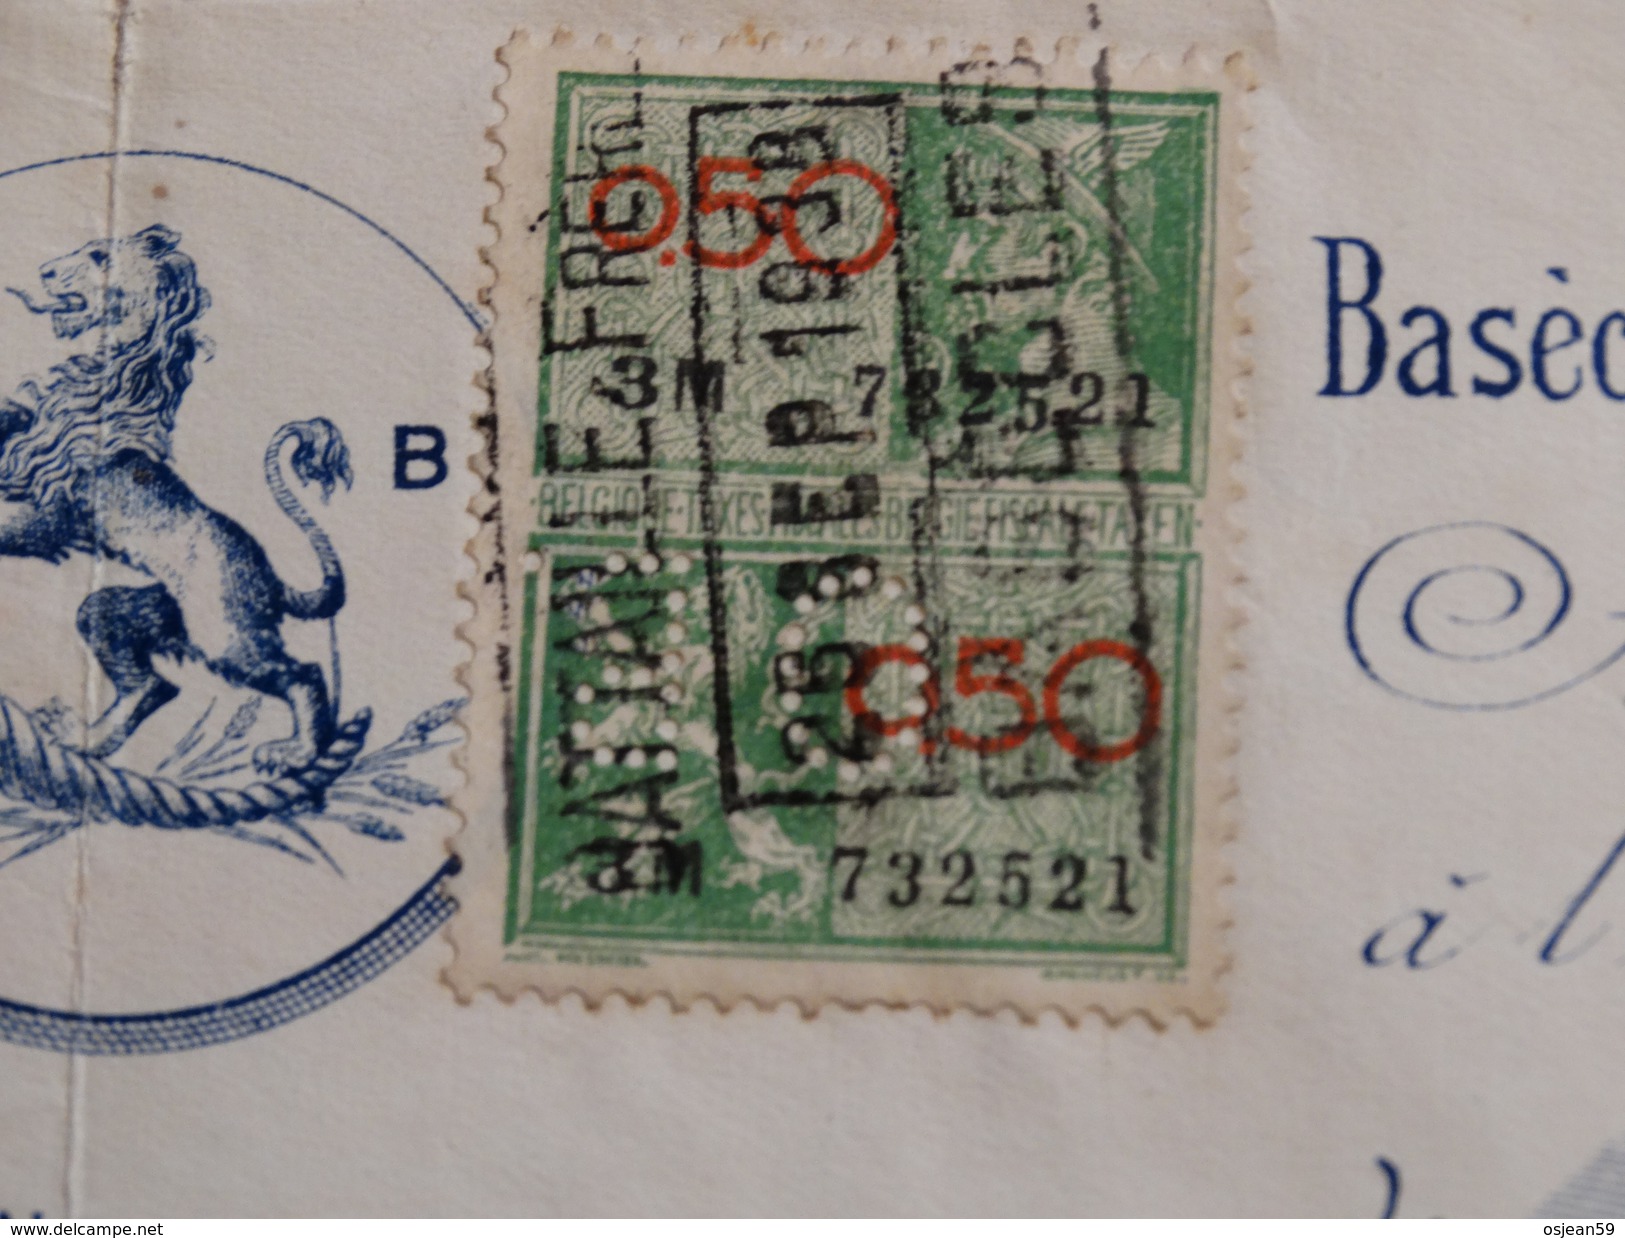 Timbre Fiscal Pérforé Sur Reçu Battaille Frères à Basècles(Belgique).-1938- - Documentos